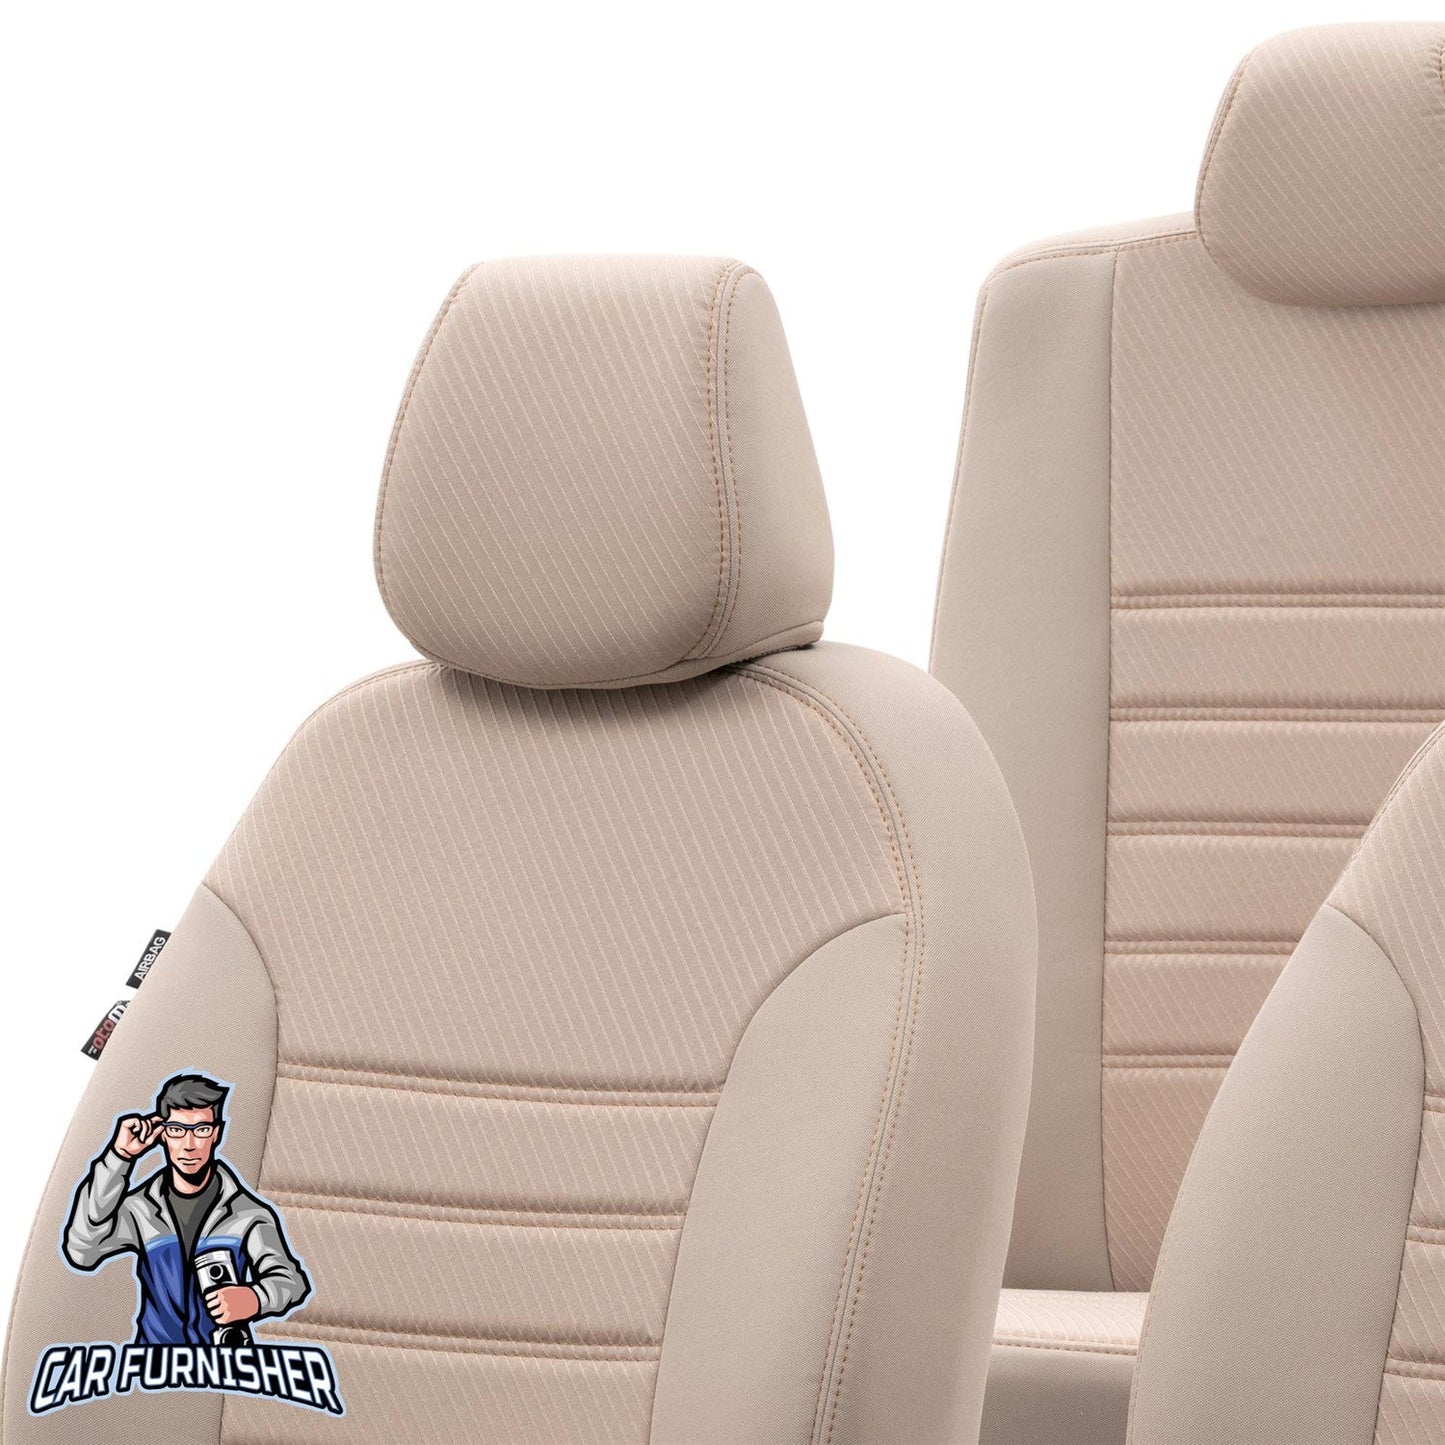 Volvo XC60 Seat Cover Original Jacquard Design Dark Beige Jacquard Fabric